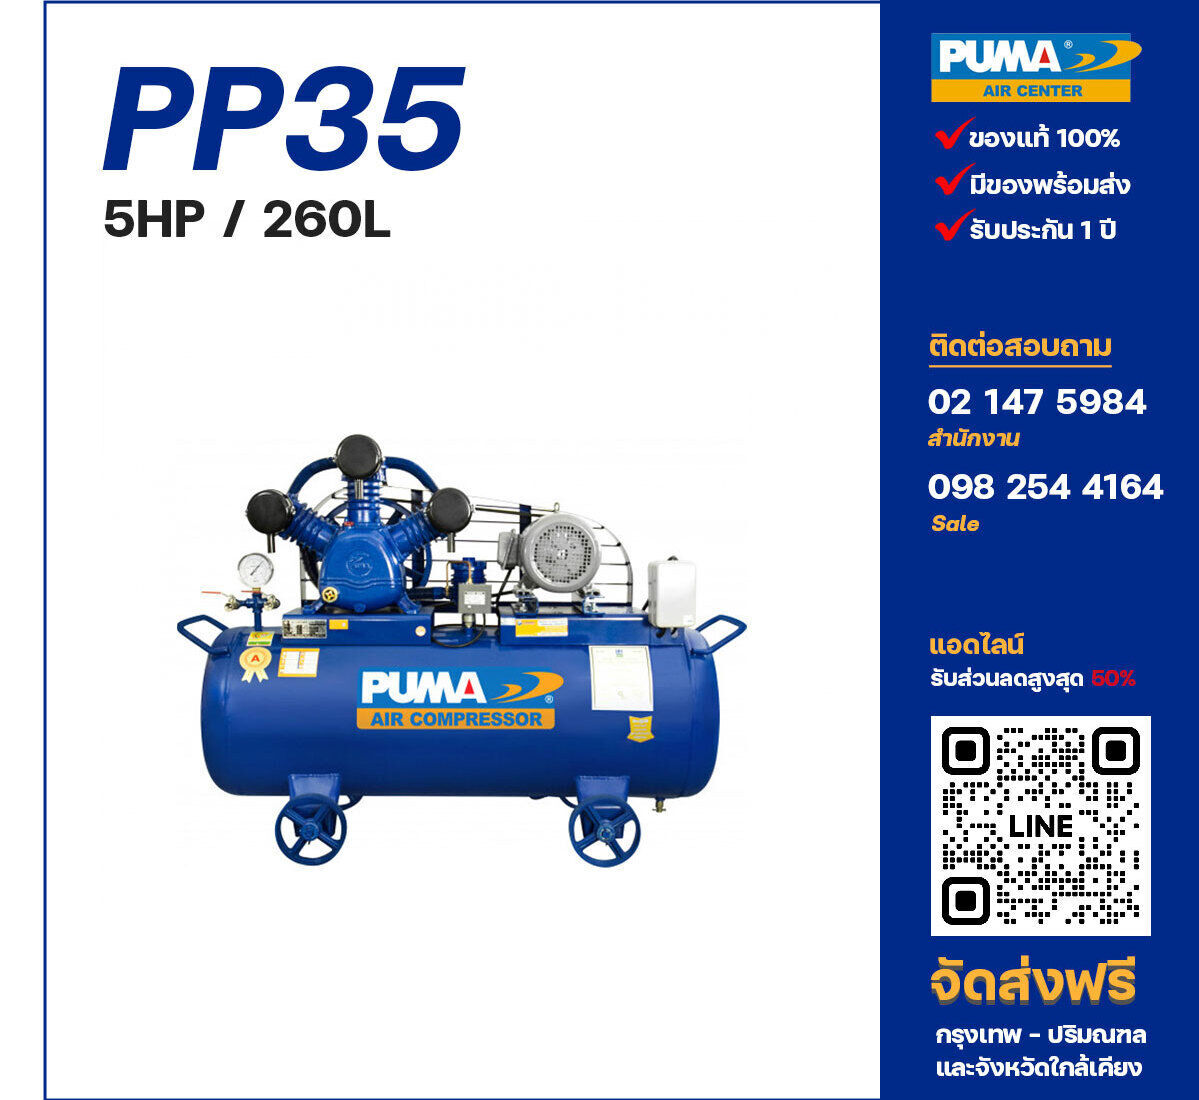 ปั๊มลมพูม่า PUMA PP35-PPM220V/380V ปั๊มลมลูกสูบ ขนาด 3 สูบ 5 แรงม้า 260 ลิตร PUMA พร้อมมอเตอร์ PUMA ไฟ 220V/380V ส่งฟรี กรุงเทพฯ-ปริมณฑล รับประกัน 1 ปี